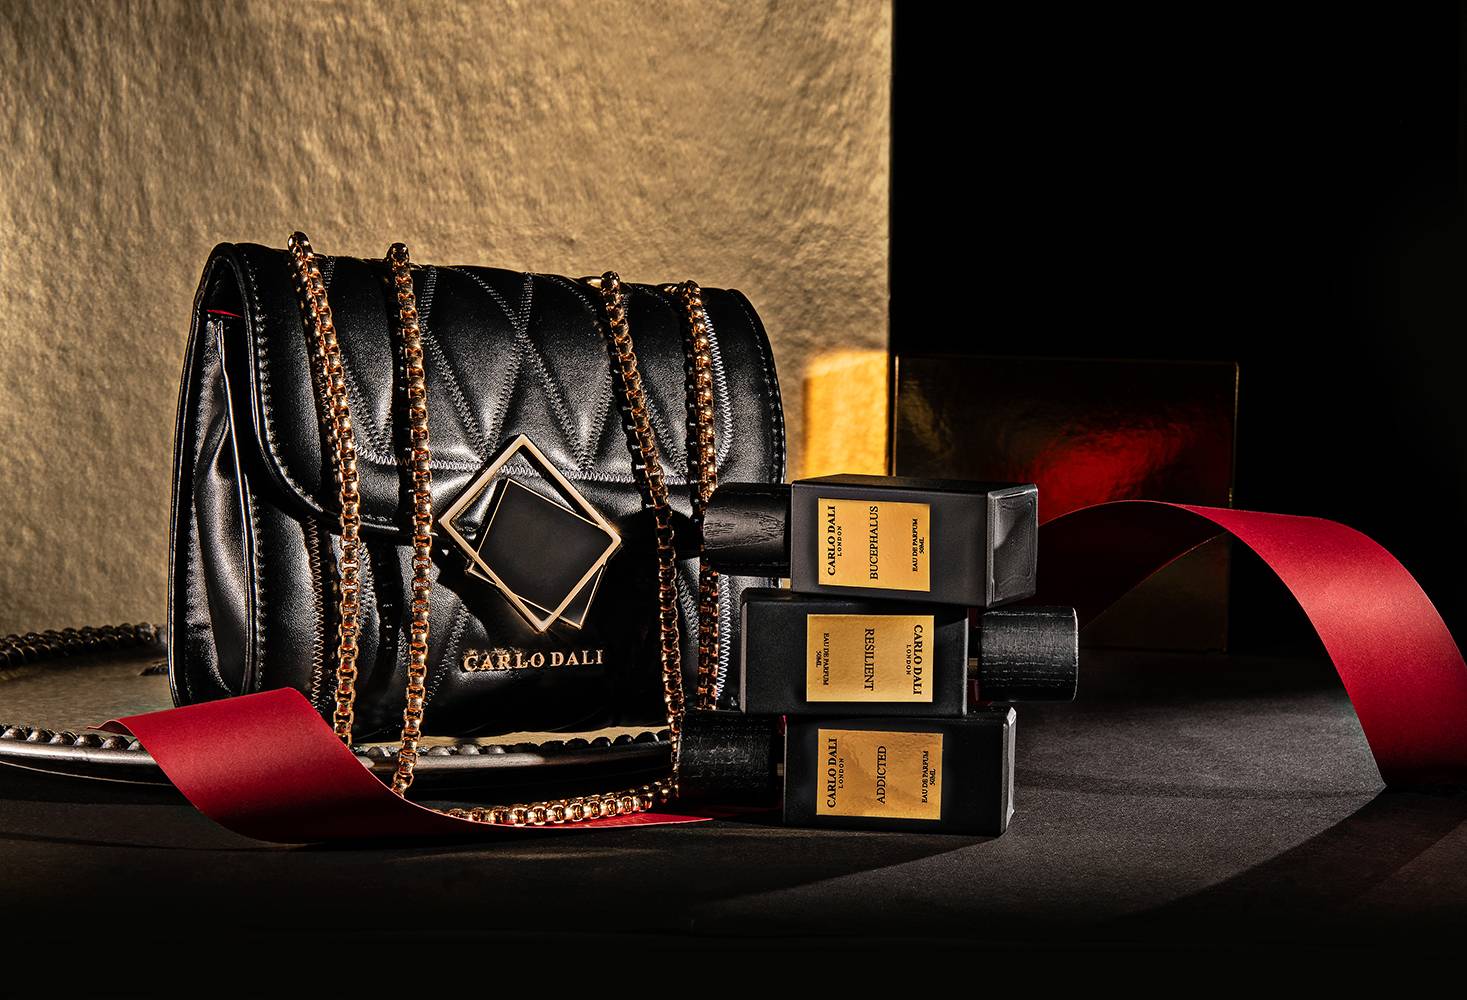 .Σικάτες τσάντες που κλέβουν τις εντυπώσεις από το διεθνές luxury brand CARLO DALI LONDON